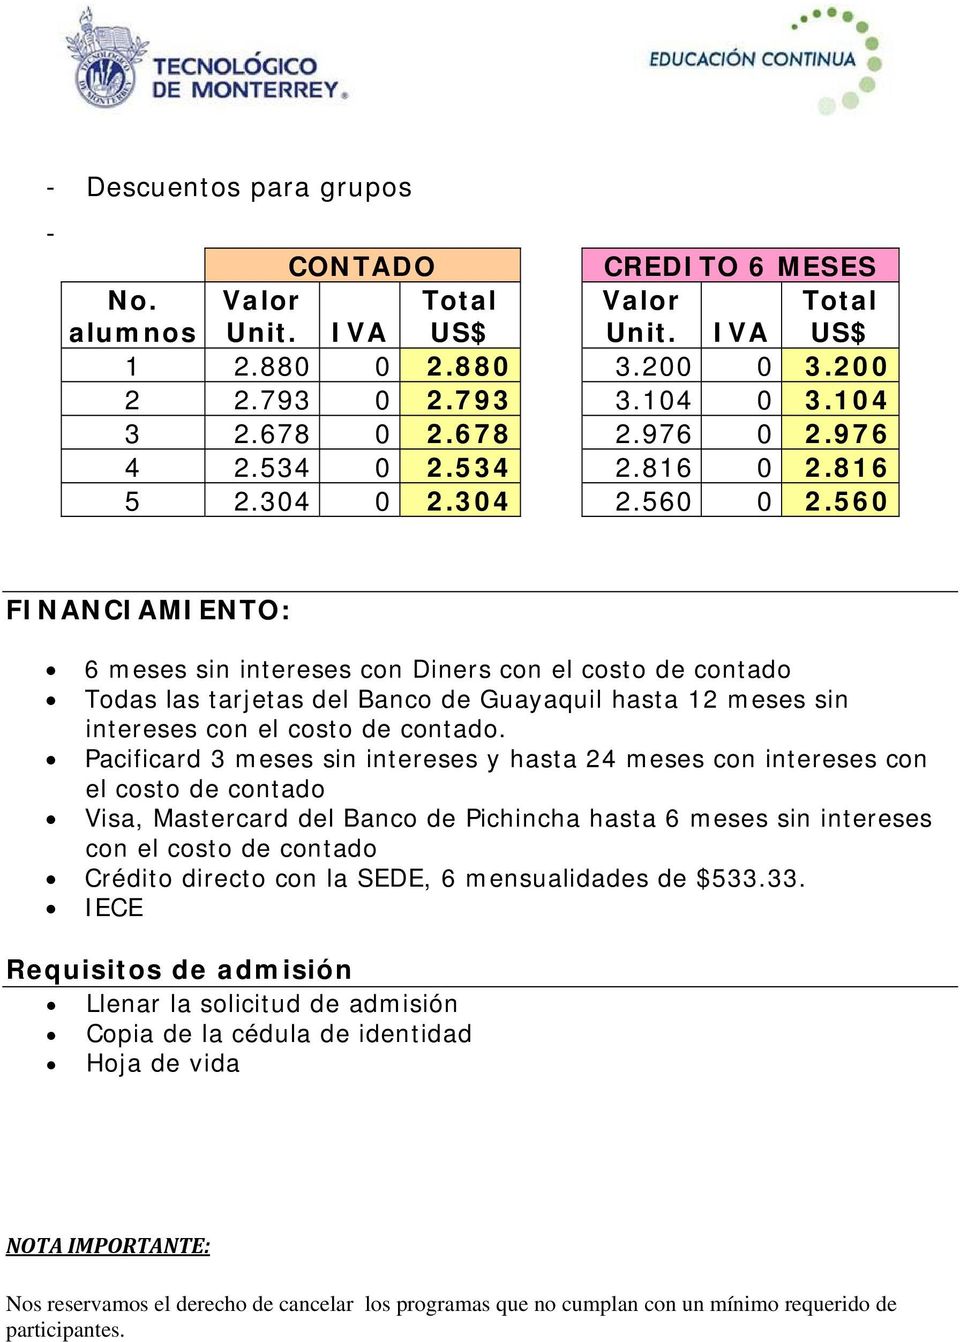 560 FINANCIAMIENTO: 6 meses sin intereses con Diners con el costo de contado Todas las tarjetas del Banco de Guayaquil hasta 12 meses sin intereses con el costo de contado.